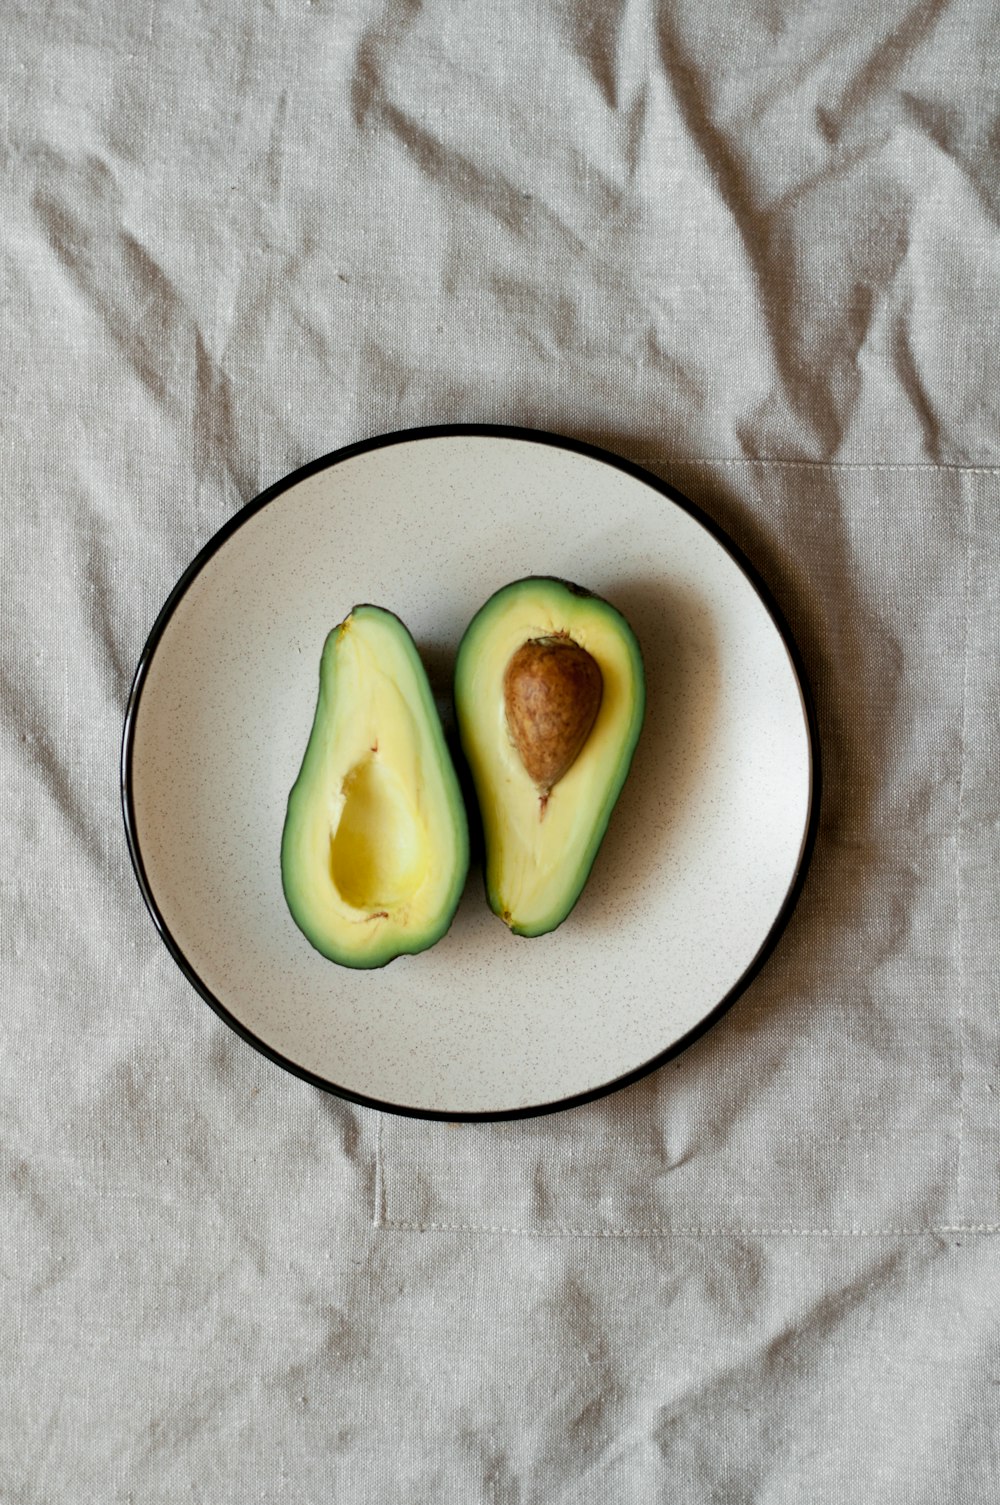 sliced avocado on plate